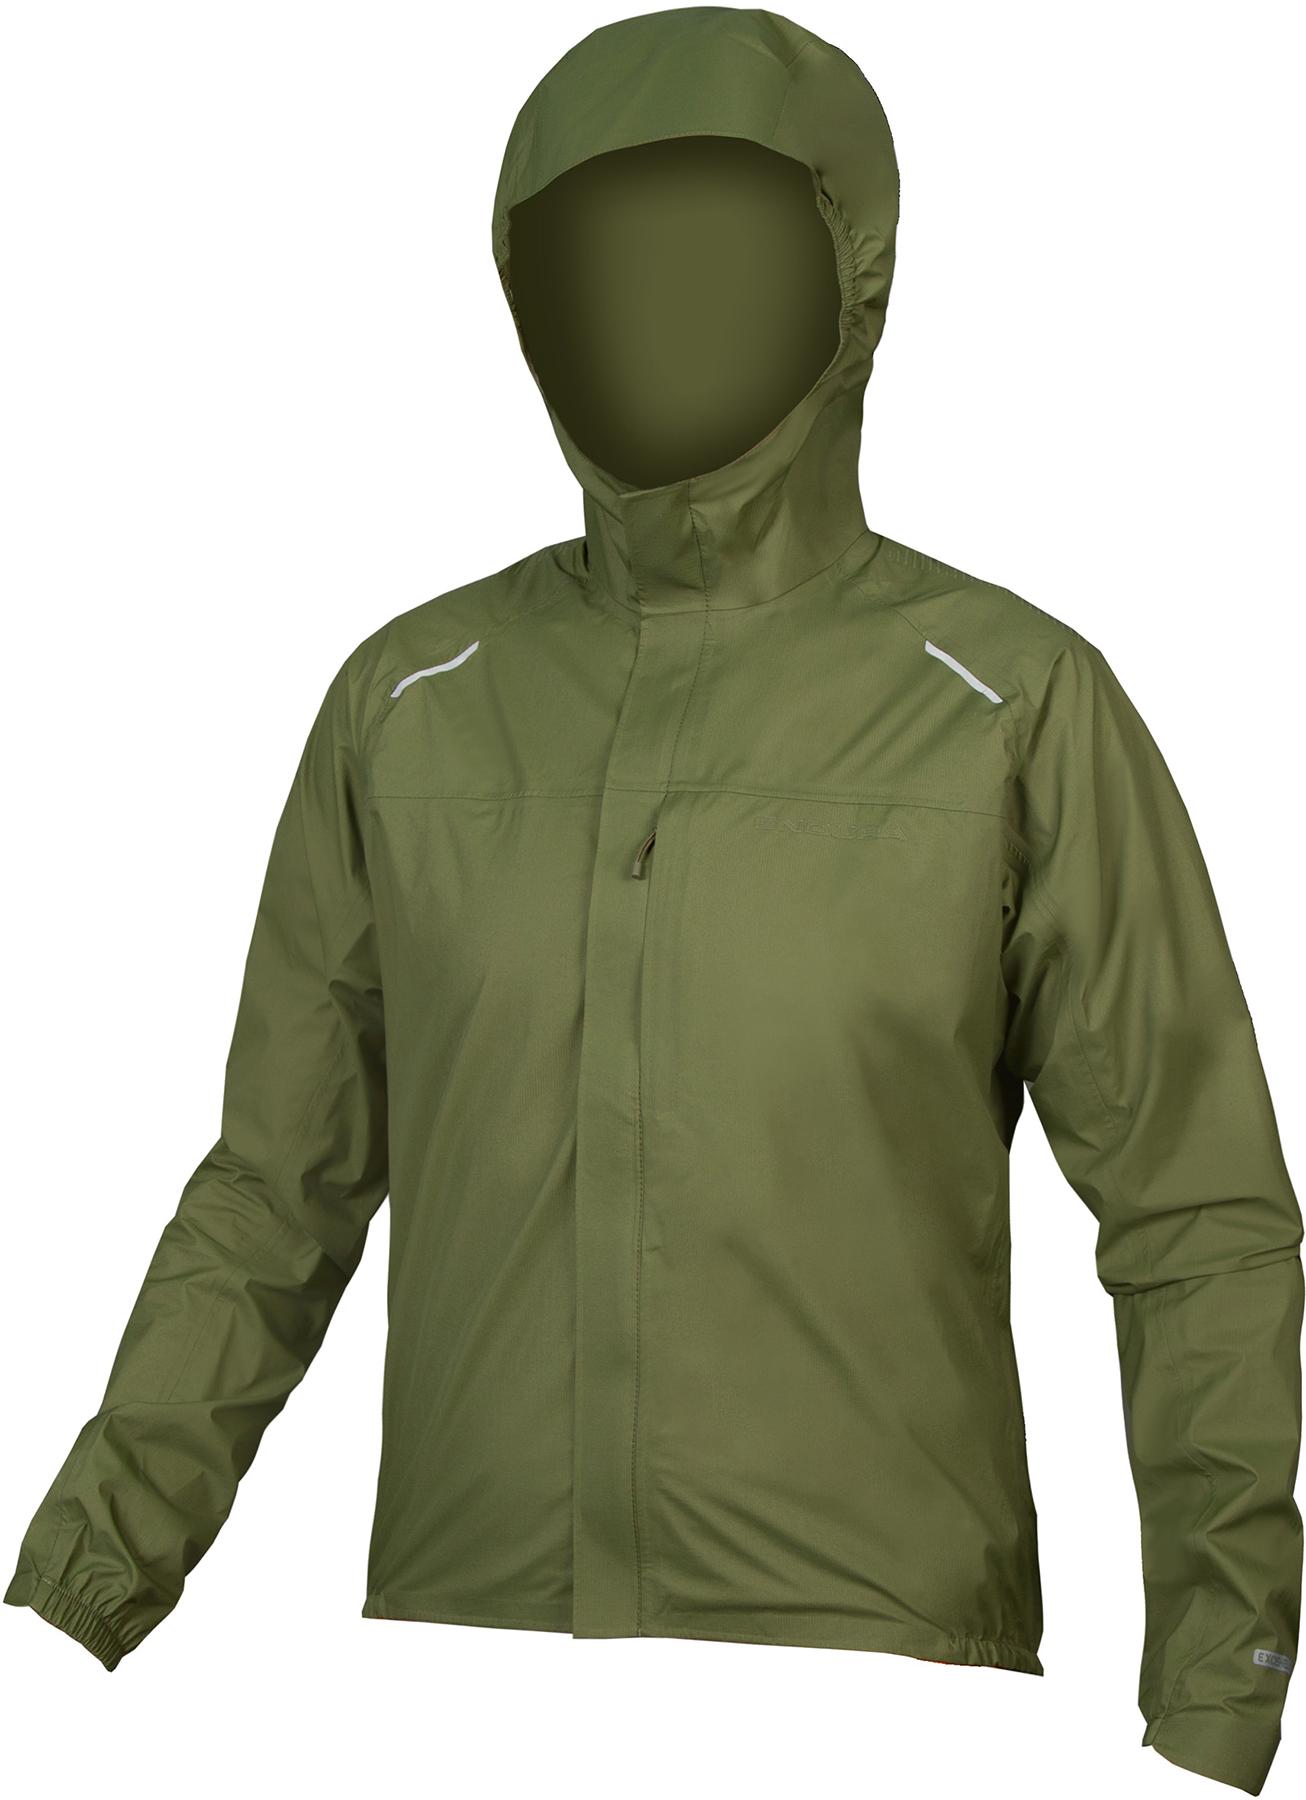 Endura Gv500 Waterproof Jacket - Olive Green